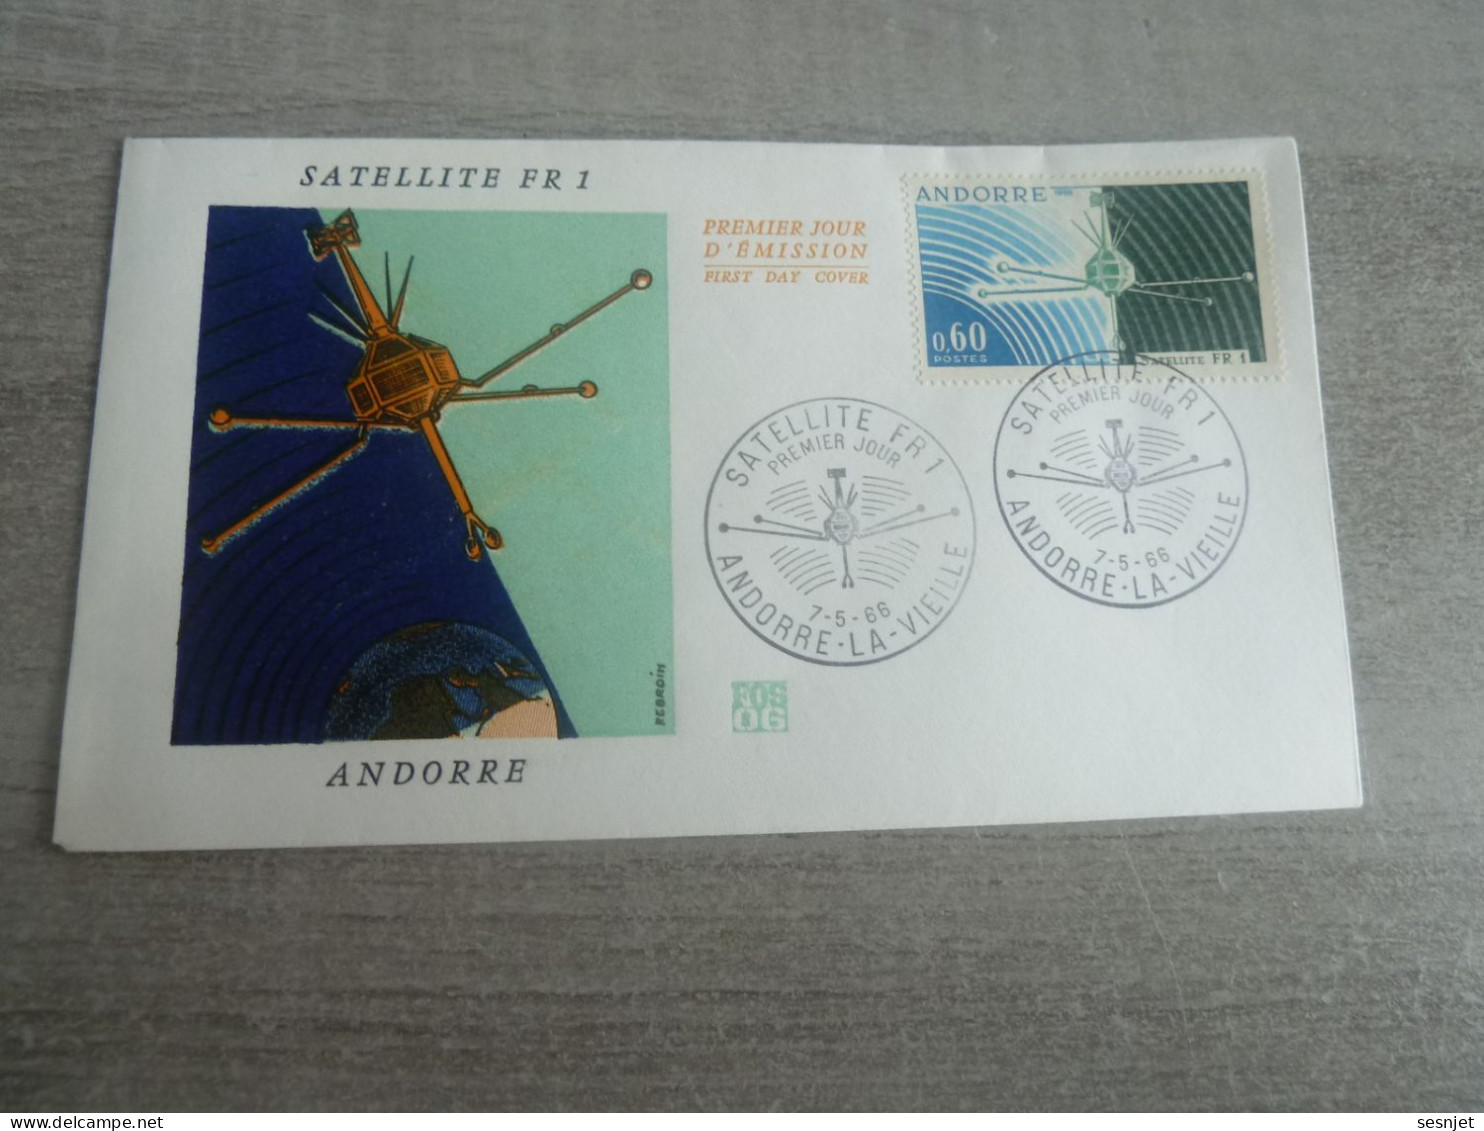 Andorre-la-Vieille - Satellite Français Fr 1 - Enveloppe Premier Jour D'Emission - Année 1966 - - Europe